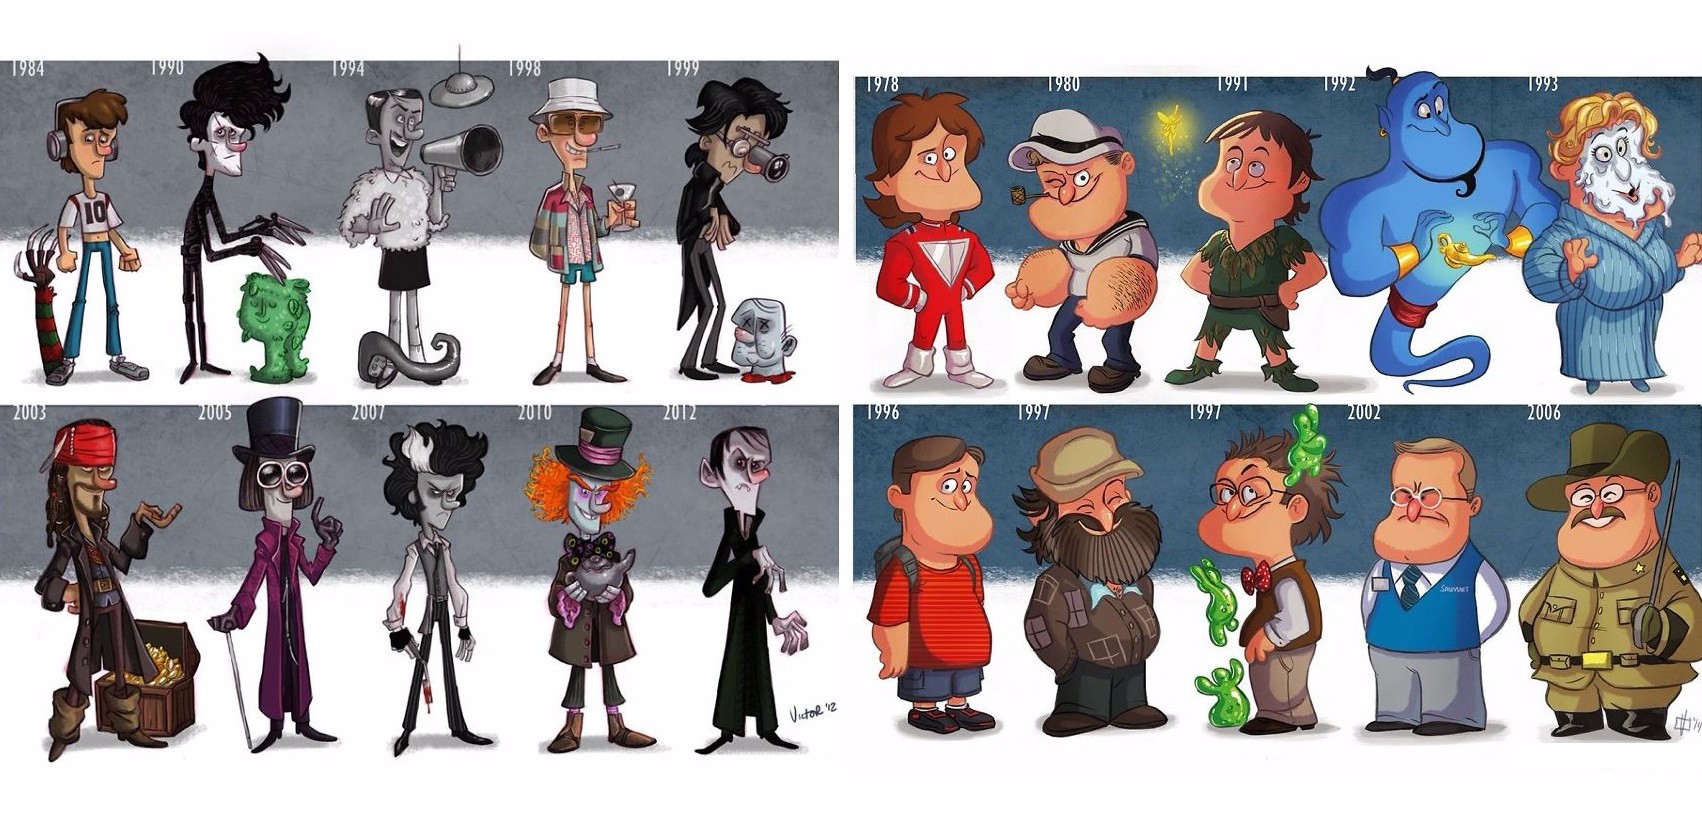 Amerykański rysownik zręcznie ilustruje ewolucję znanych aktorów i postaci filmowych.